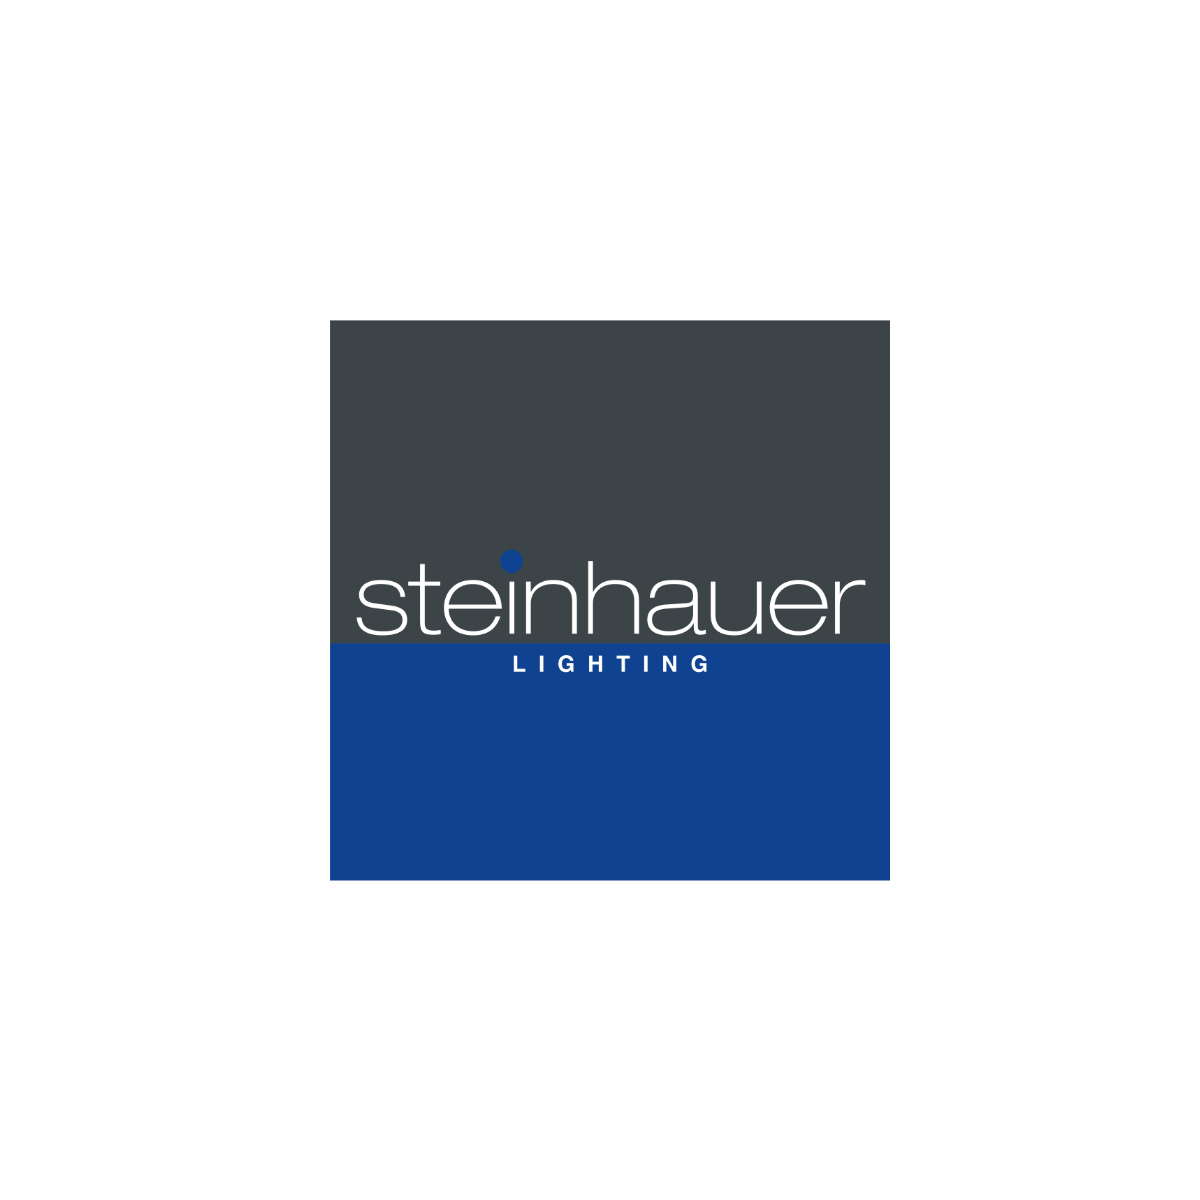 Steinhauer